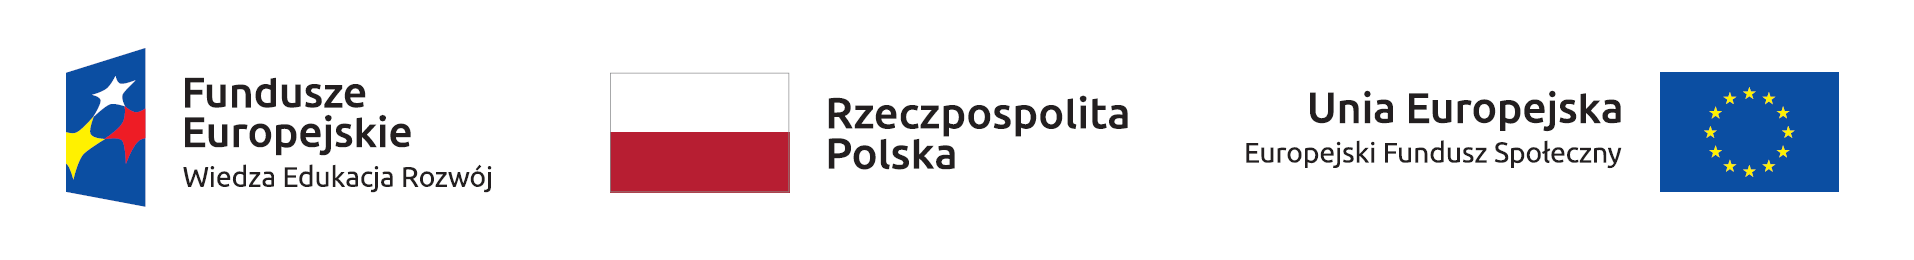 Loga_do_projektu_finansowanego_ze_środków_Europejskiego_Funduszu_Społecznego_(EFS)_Program_Operacyjny_Wiedza_Edukacja_Rozwój:_Logo Fundusze Europejskie Wiedza Edukacja Rozwój_Logo_flagi_Rzeczpospolita Polska_Logo_Unia Europejska_Europejski_Fundusz_Społeczny